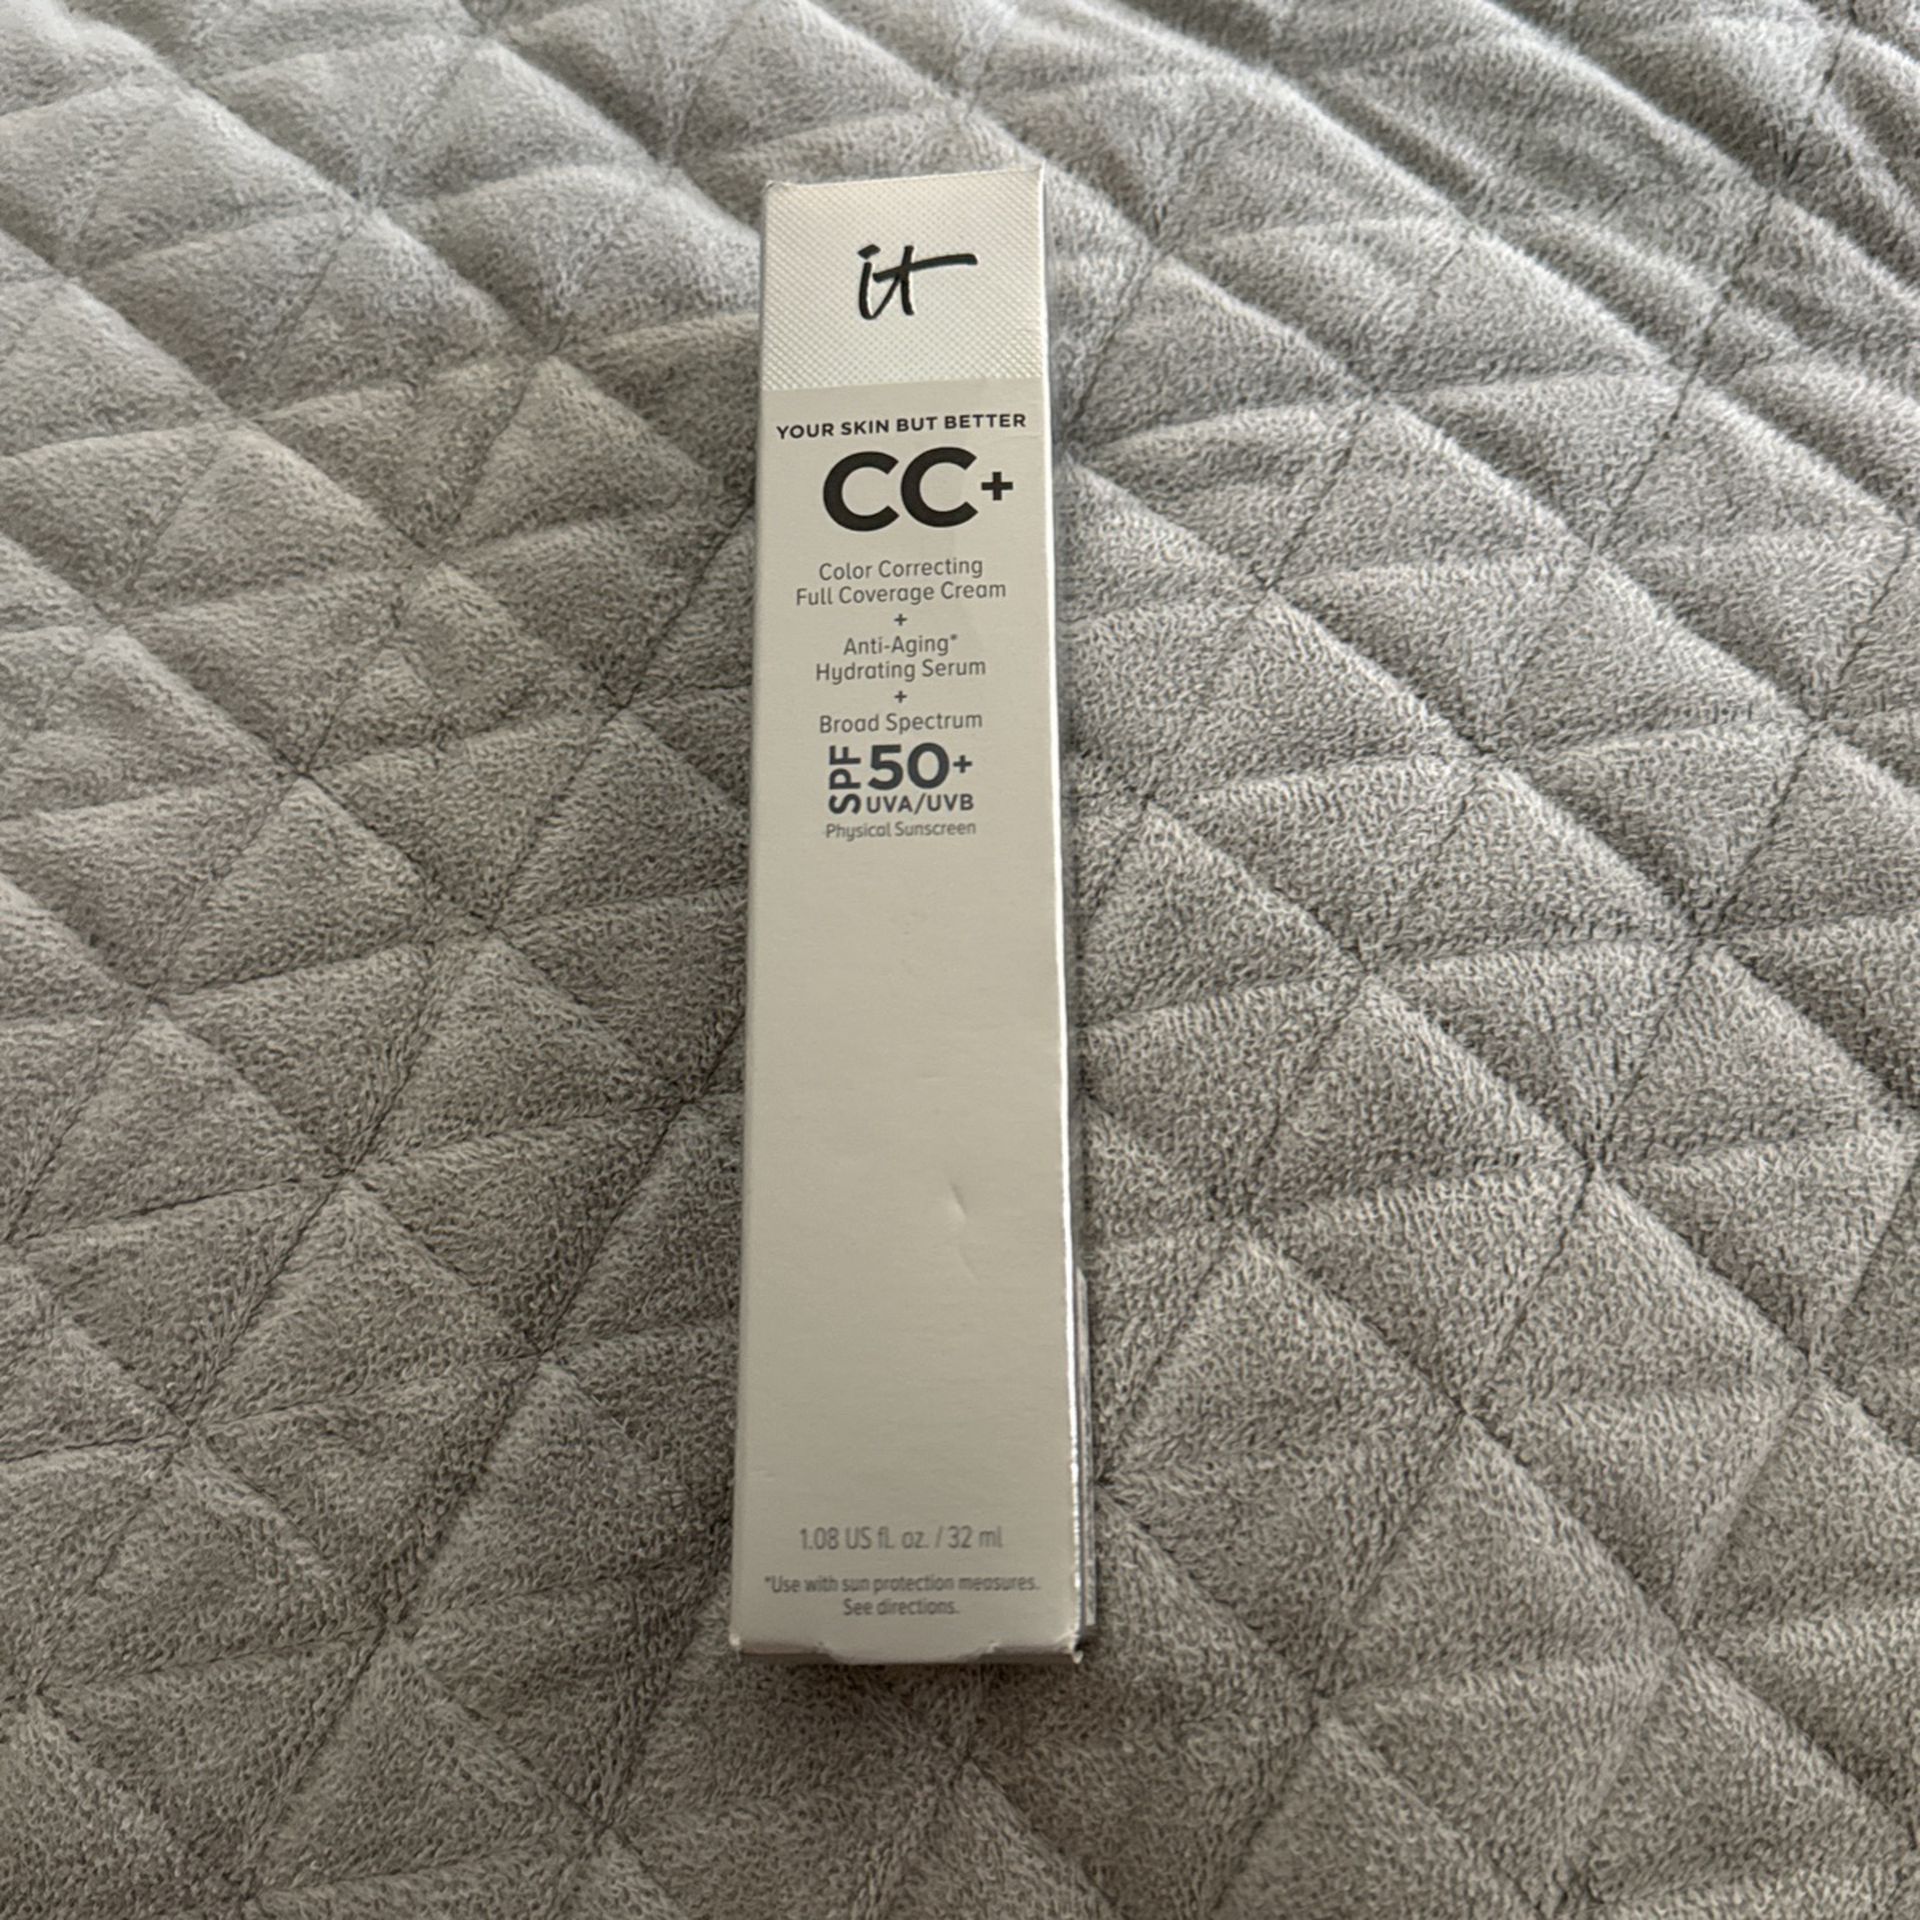 It Cosmetics Cc+ SPF 50+ Color Medium 